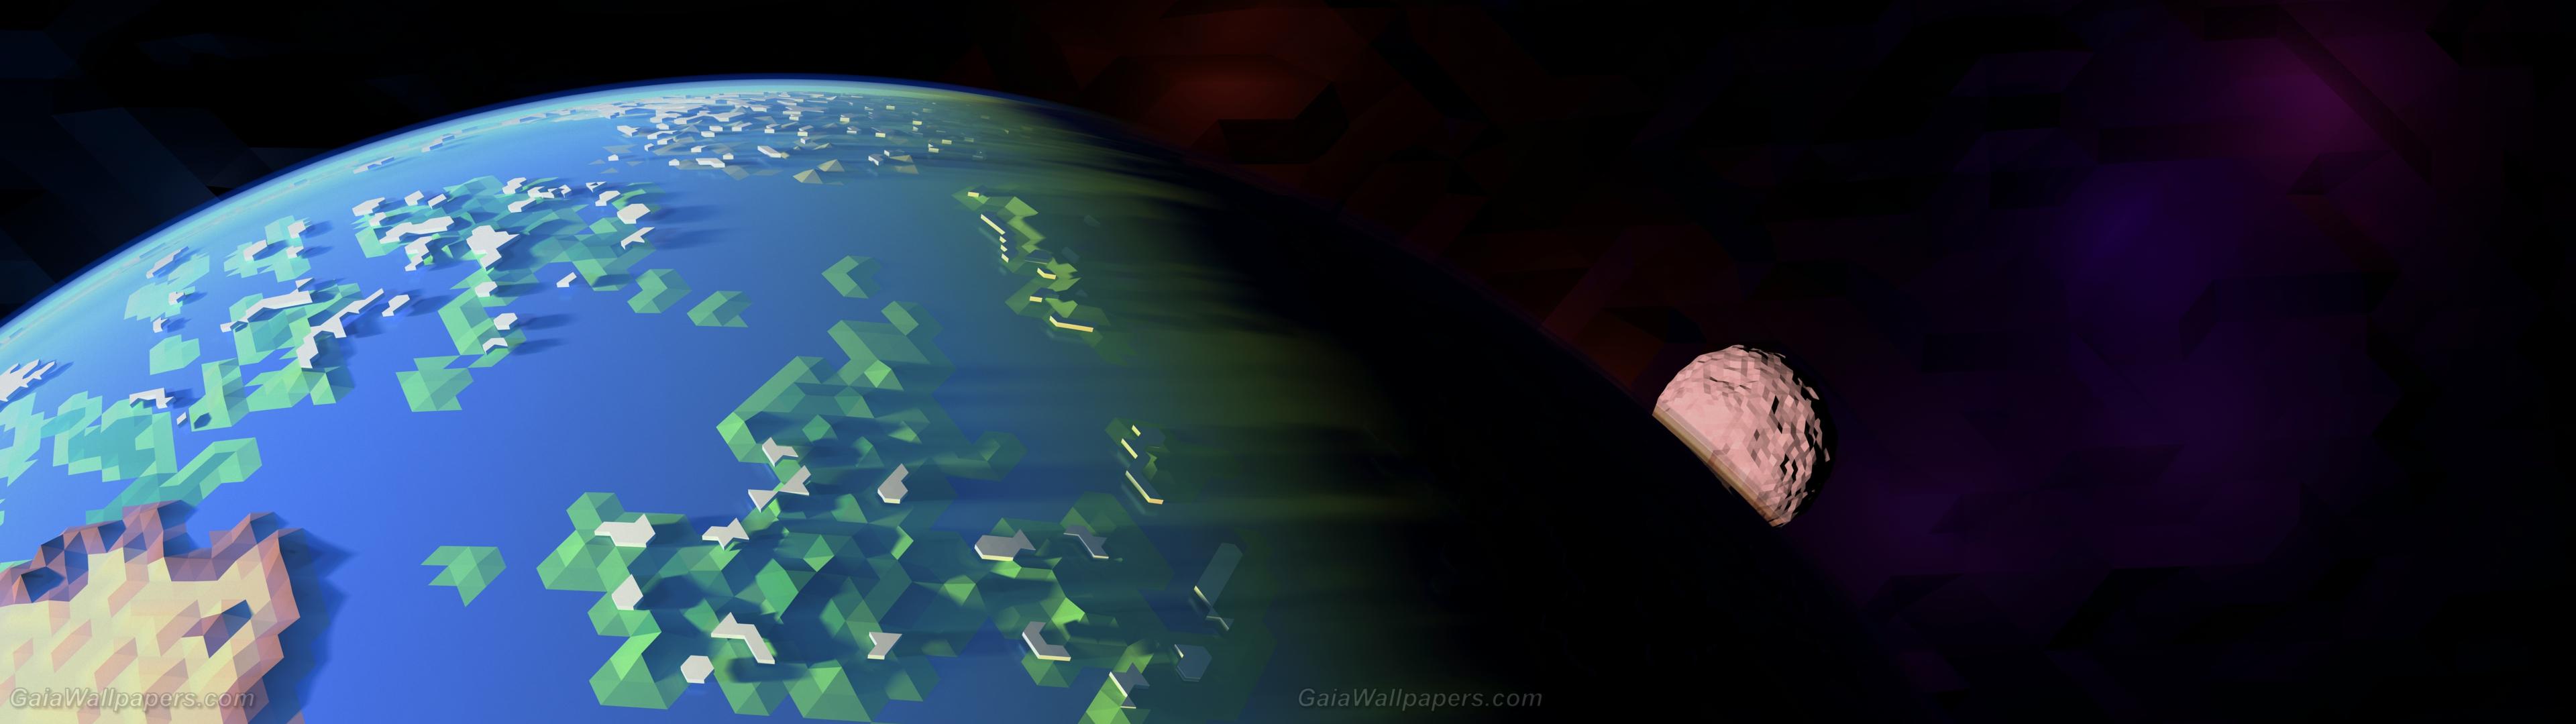 Polygonal Earth In Space Wallpaper Desktop